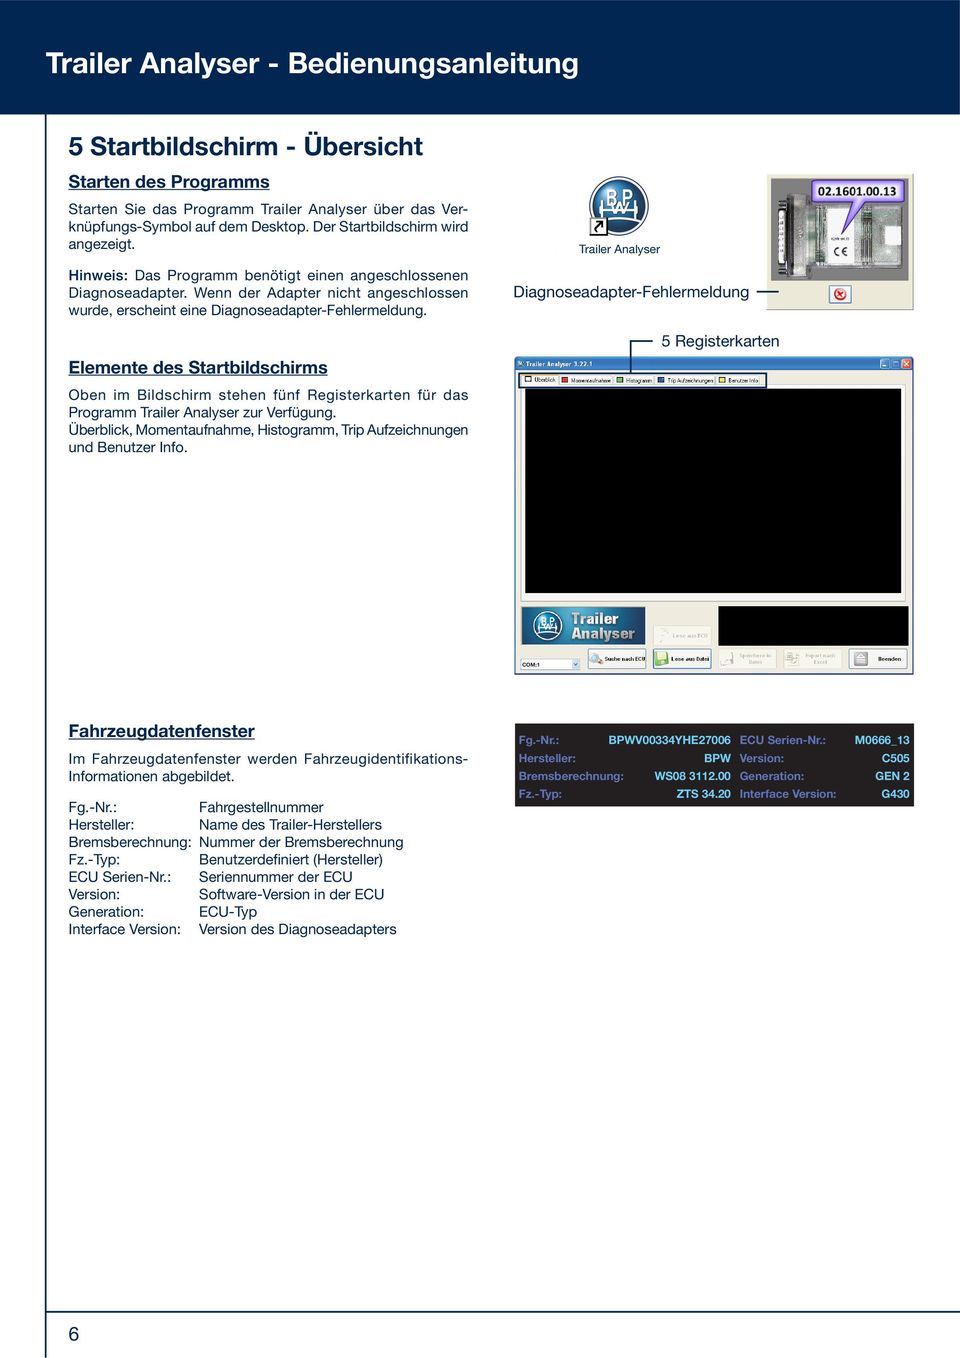 Elemente des Startbildschirms Oben im Bildschirm stehen fünf Registerkarten für das Programm Trailer Analyser zur Verfügung.